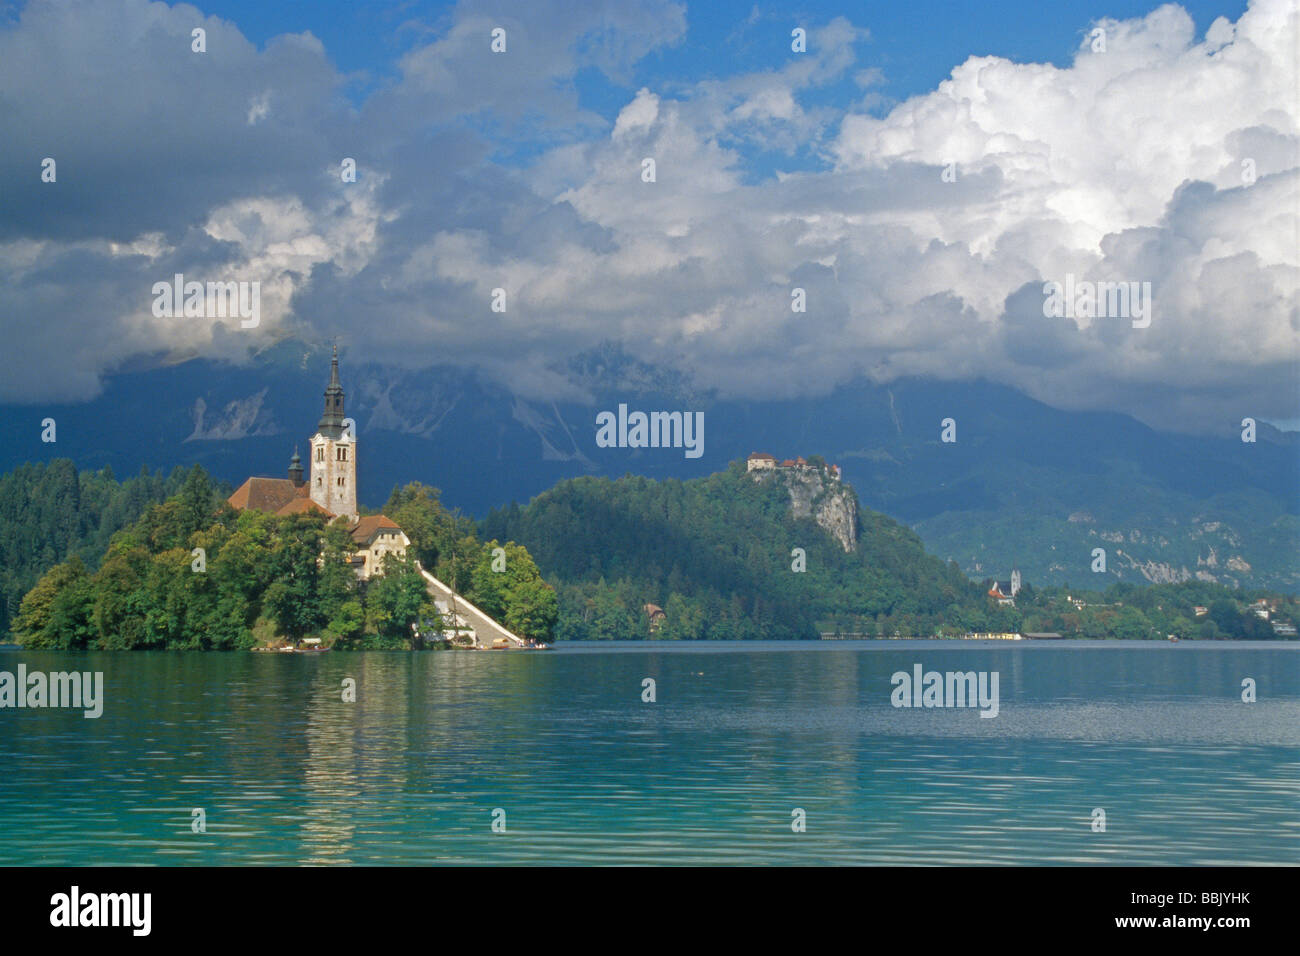 Lago alpino di Bled con la Chiesa di Santa Maria in una piccola isola e il castello di Bled in background, Slovenia. Foto Stock